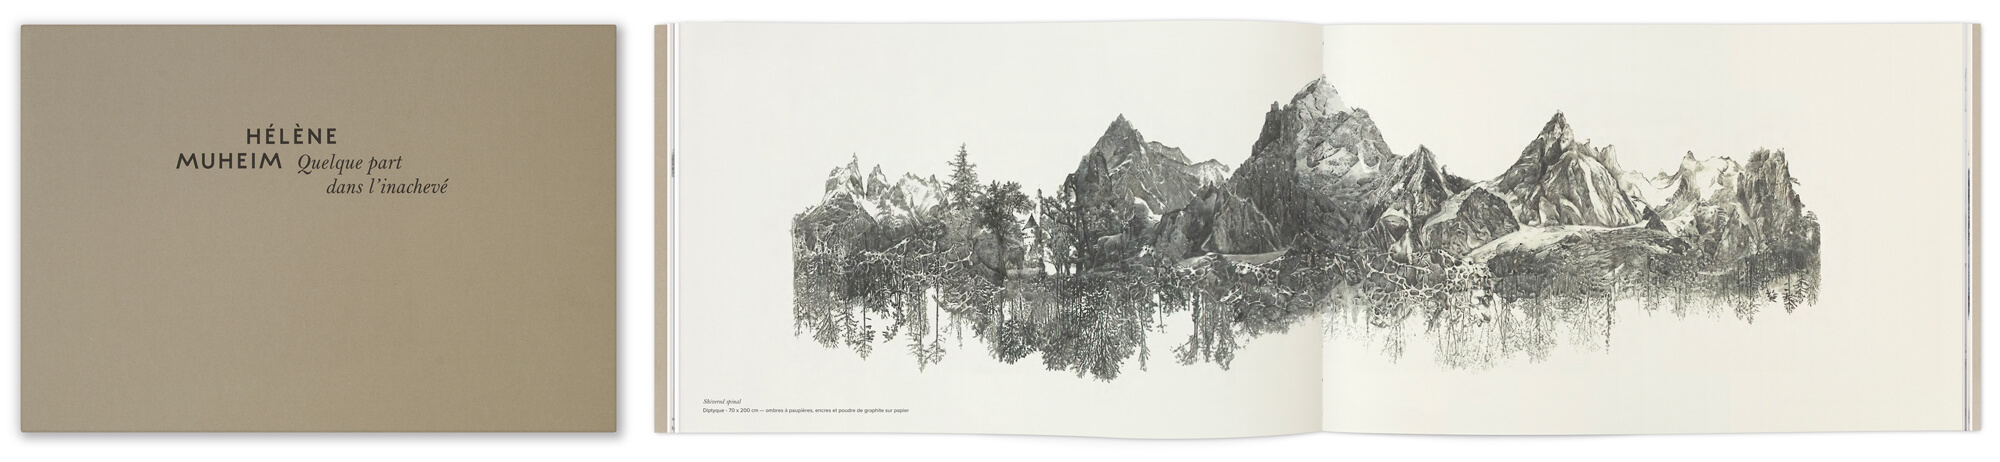 Les dessins de paysage d'Hélène Muheim rassemblés dans le livre Quelque part dans l'inachevé, design graphique IchetKar